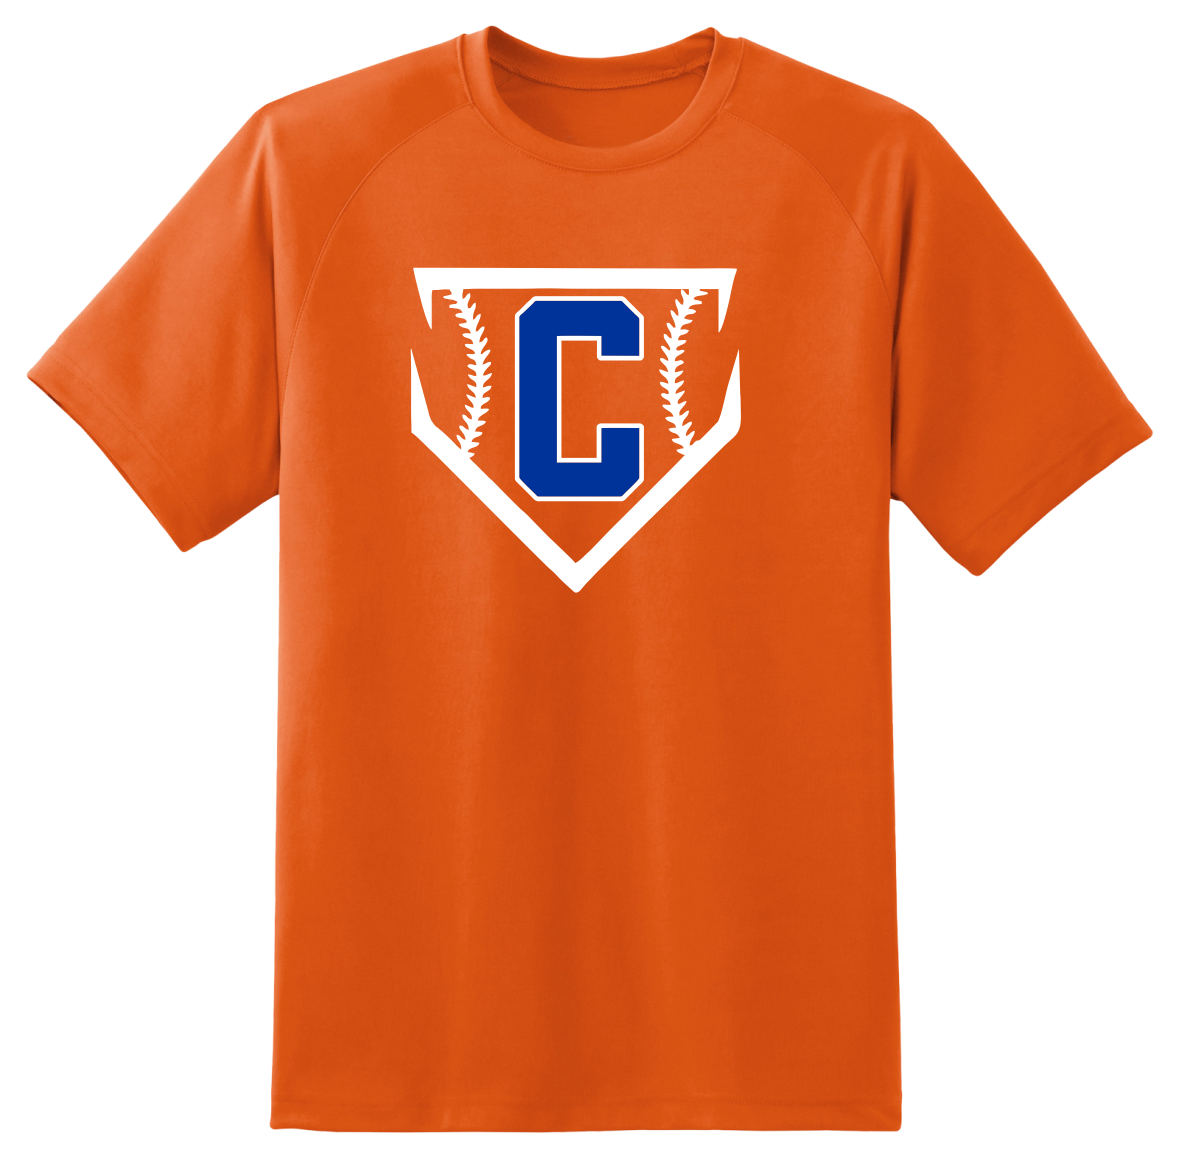 Orange Crushers Short-Sleeved Cotton T-shirt - Adult & Youth